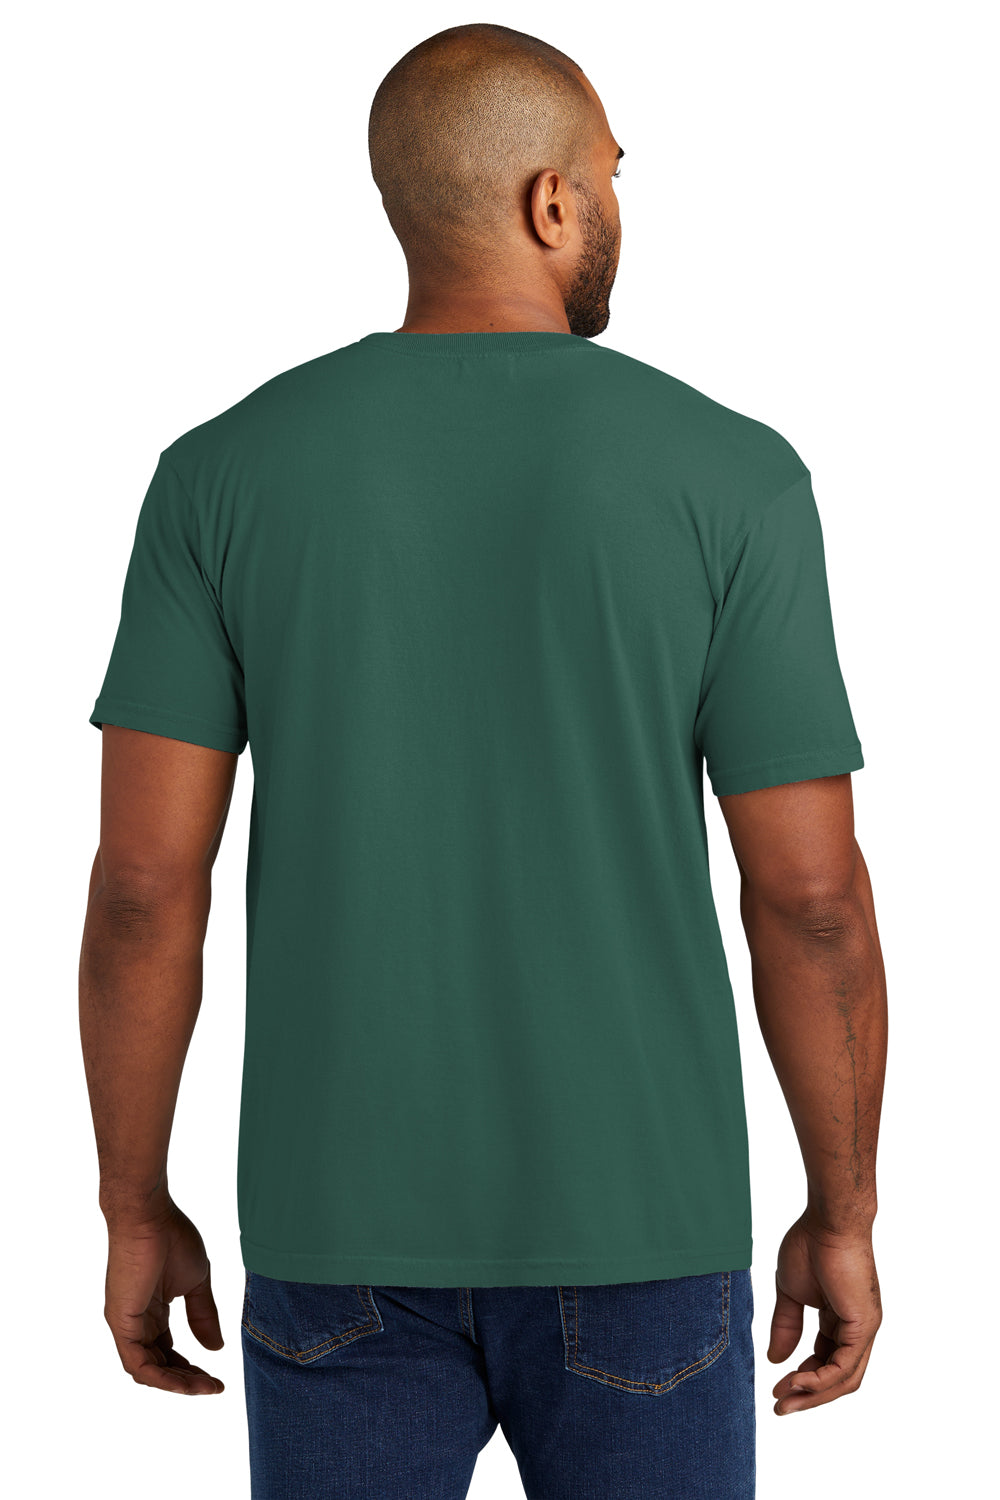 Comfort Colors Mens Short Sleeve Crewneck T-Shirt w/ Pocket Emerald Green Back